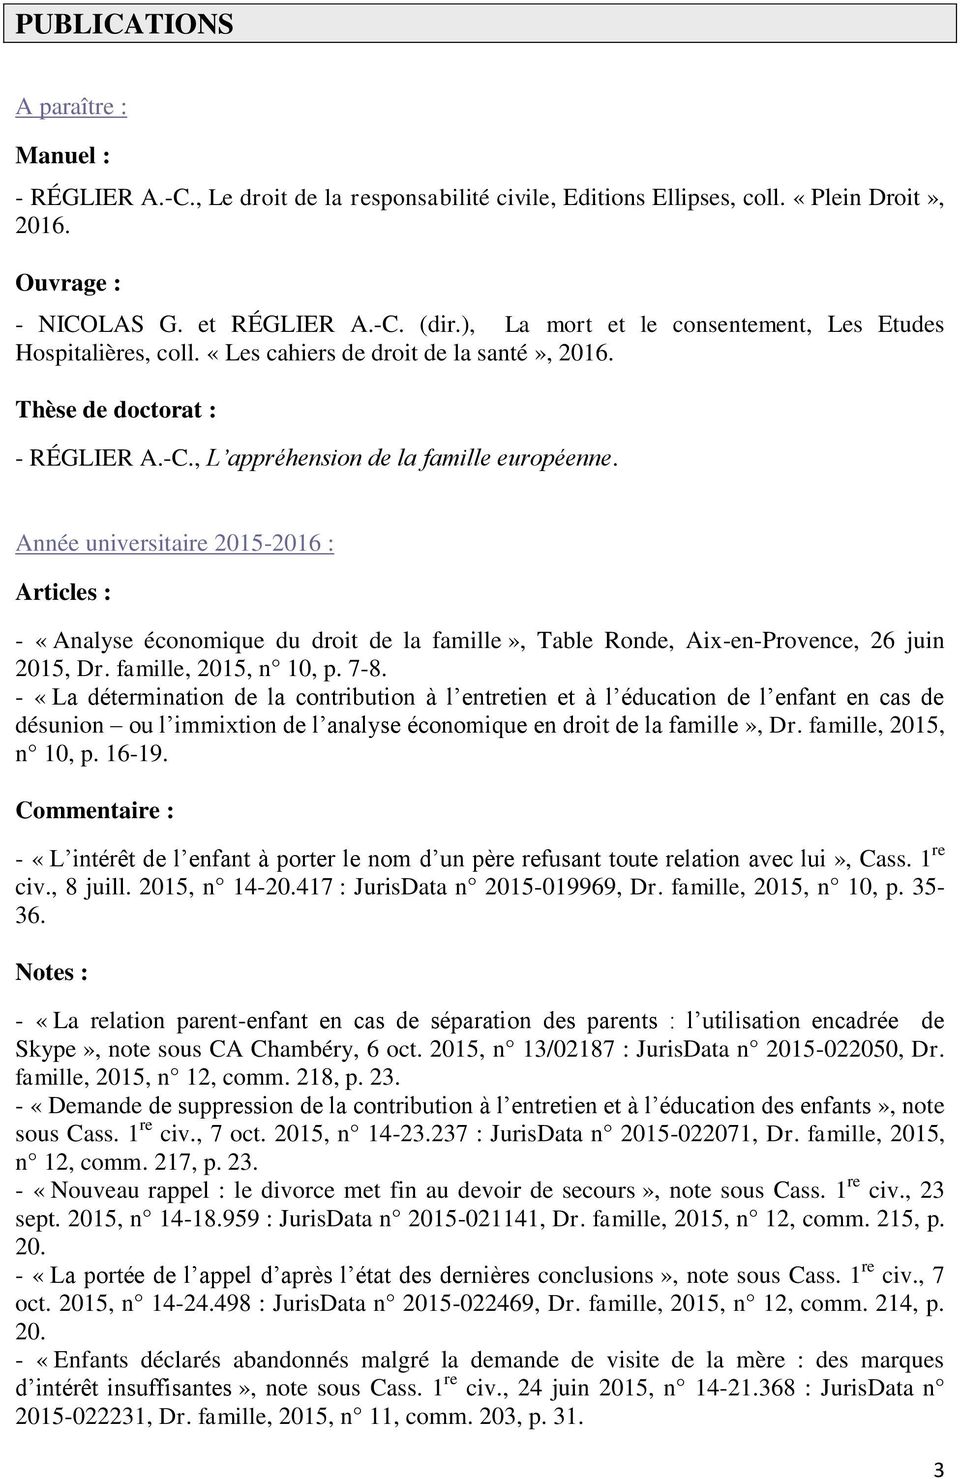 Année universitaire 2015-2016 : Articles : - «Analyse économique du droit de la famille», Table Ronde, Aix-en-Provence, 26 juin 2015, Dr. famille, 2015, n 10, p. 7-8.